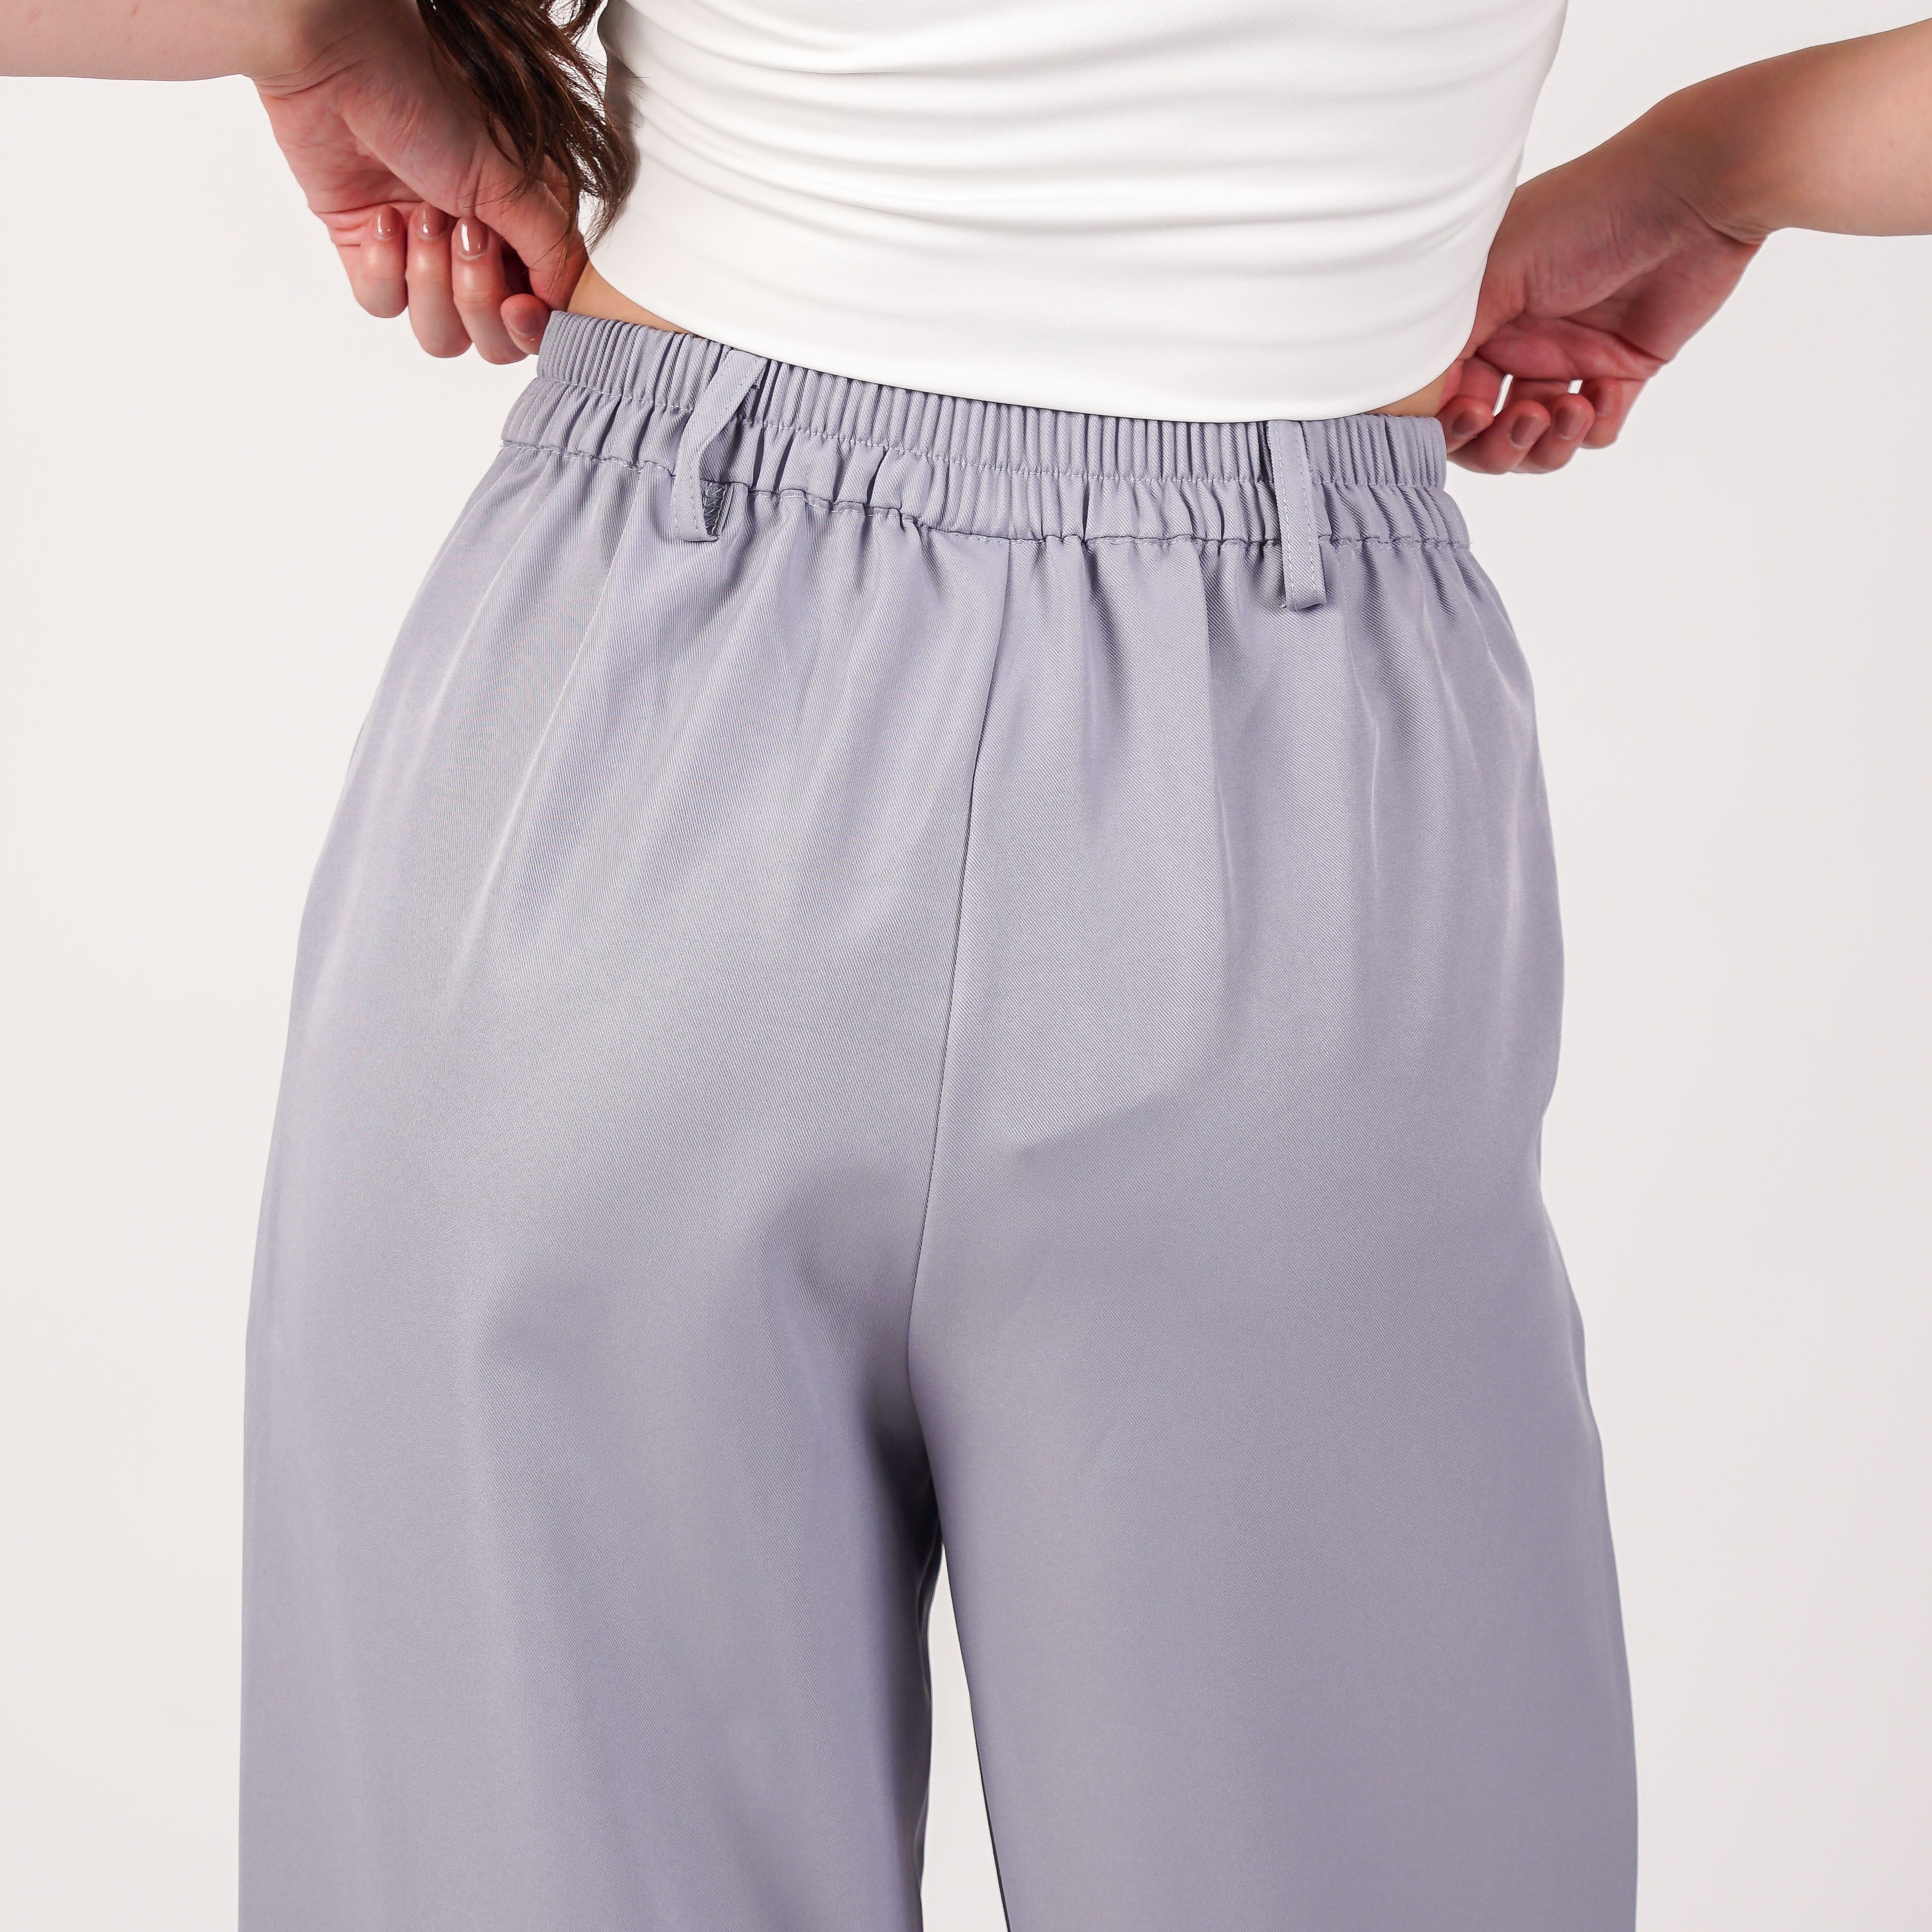 Millenia Karimah Long Pants - Celana Panjang Wanita [MYPNW 12]